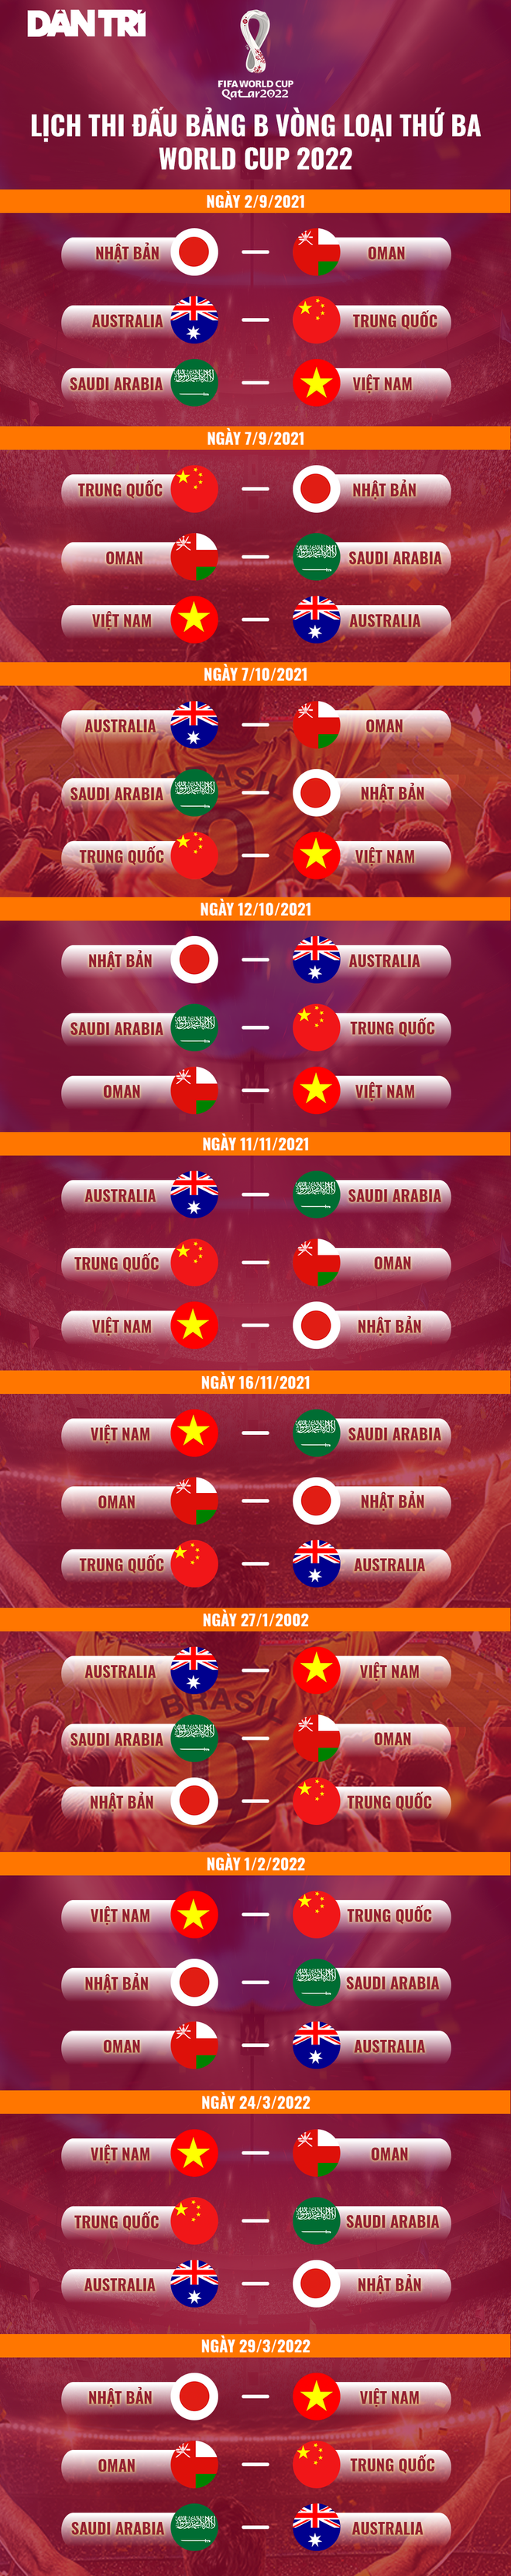 Đội tuyển Việt Nam đặt mục tiêu gì khi đấu Nhật Bản, Australia? - 3